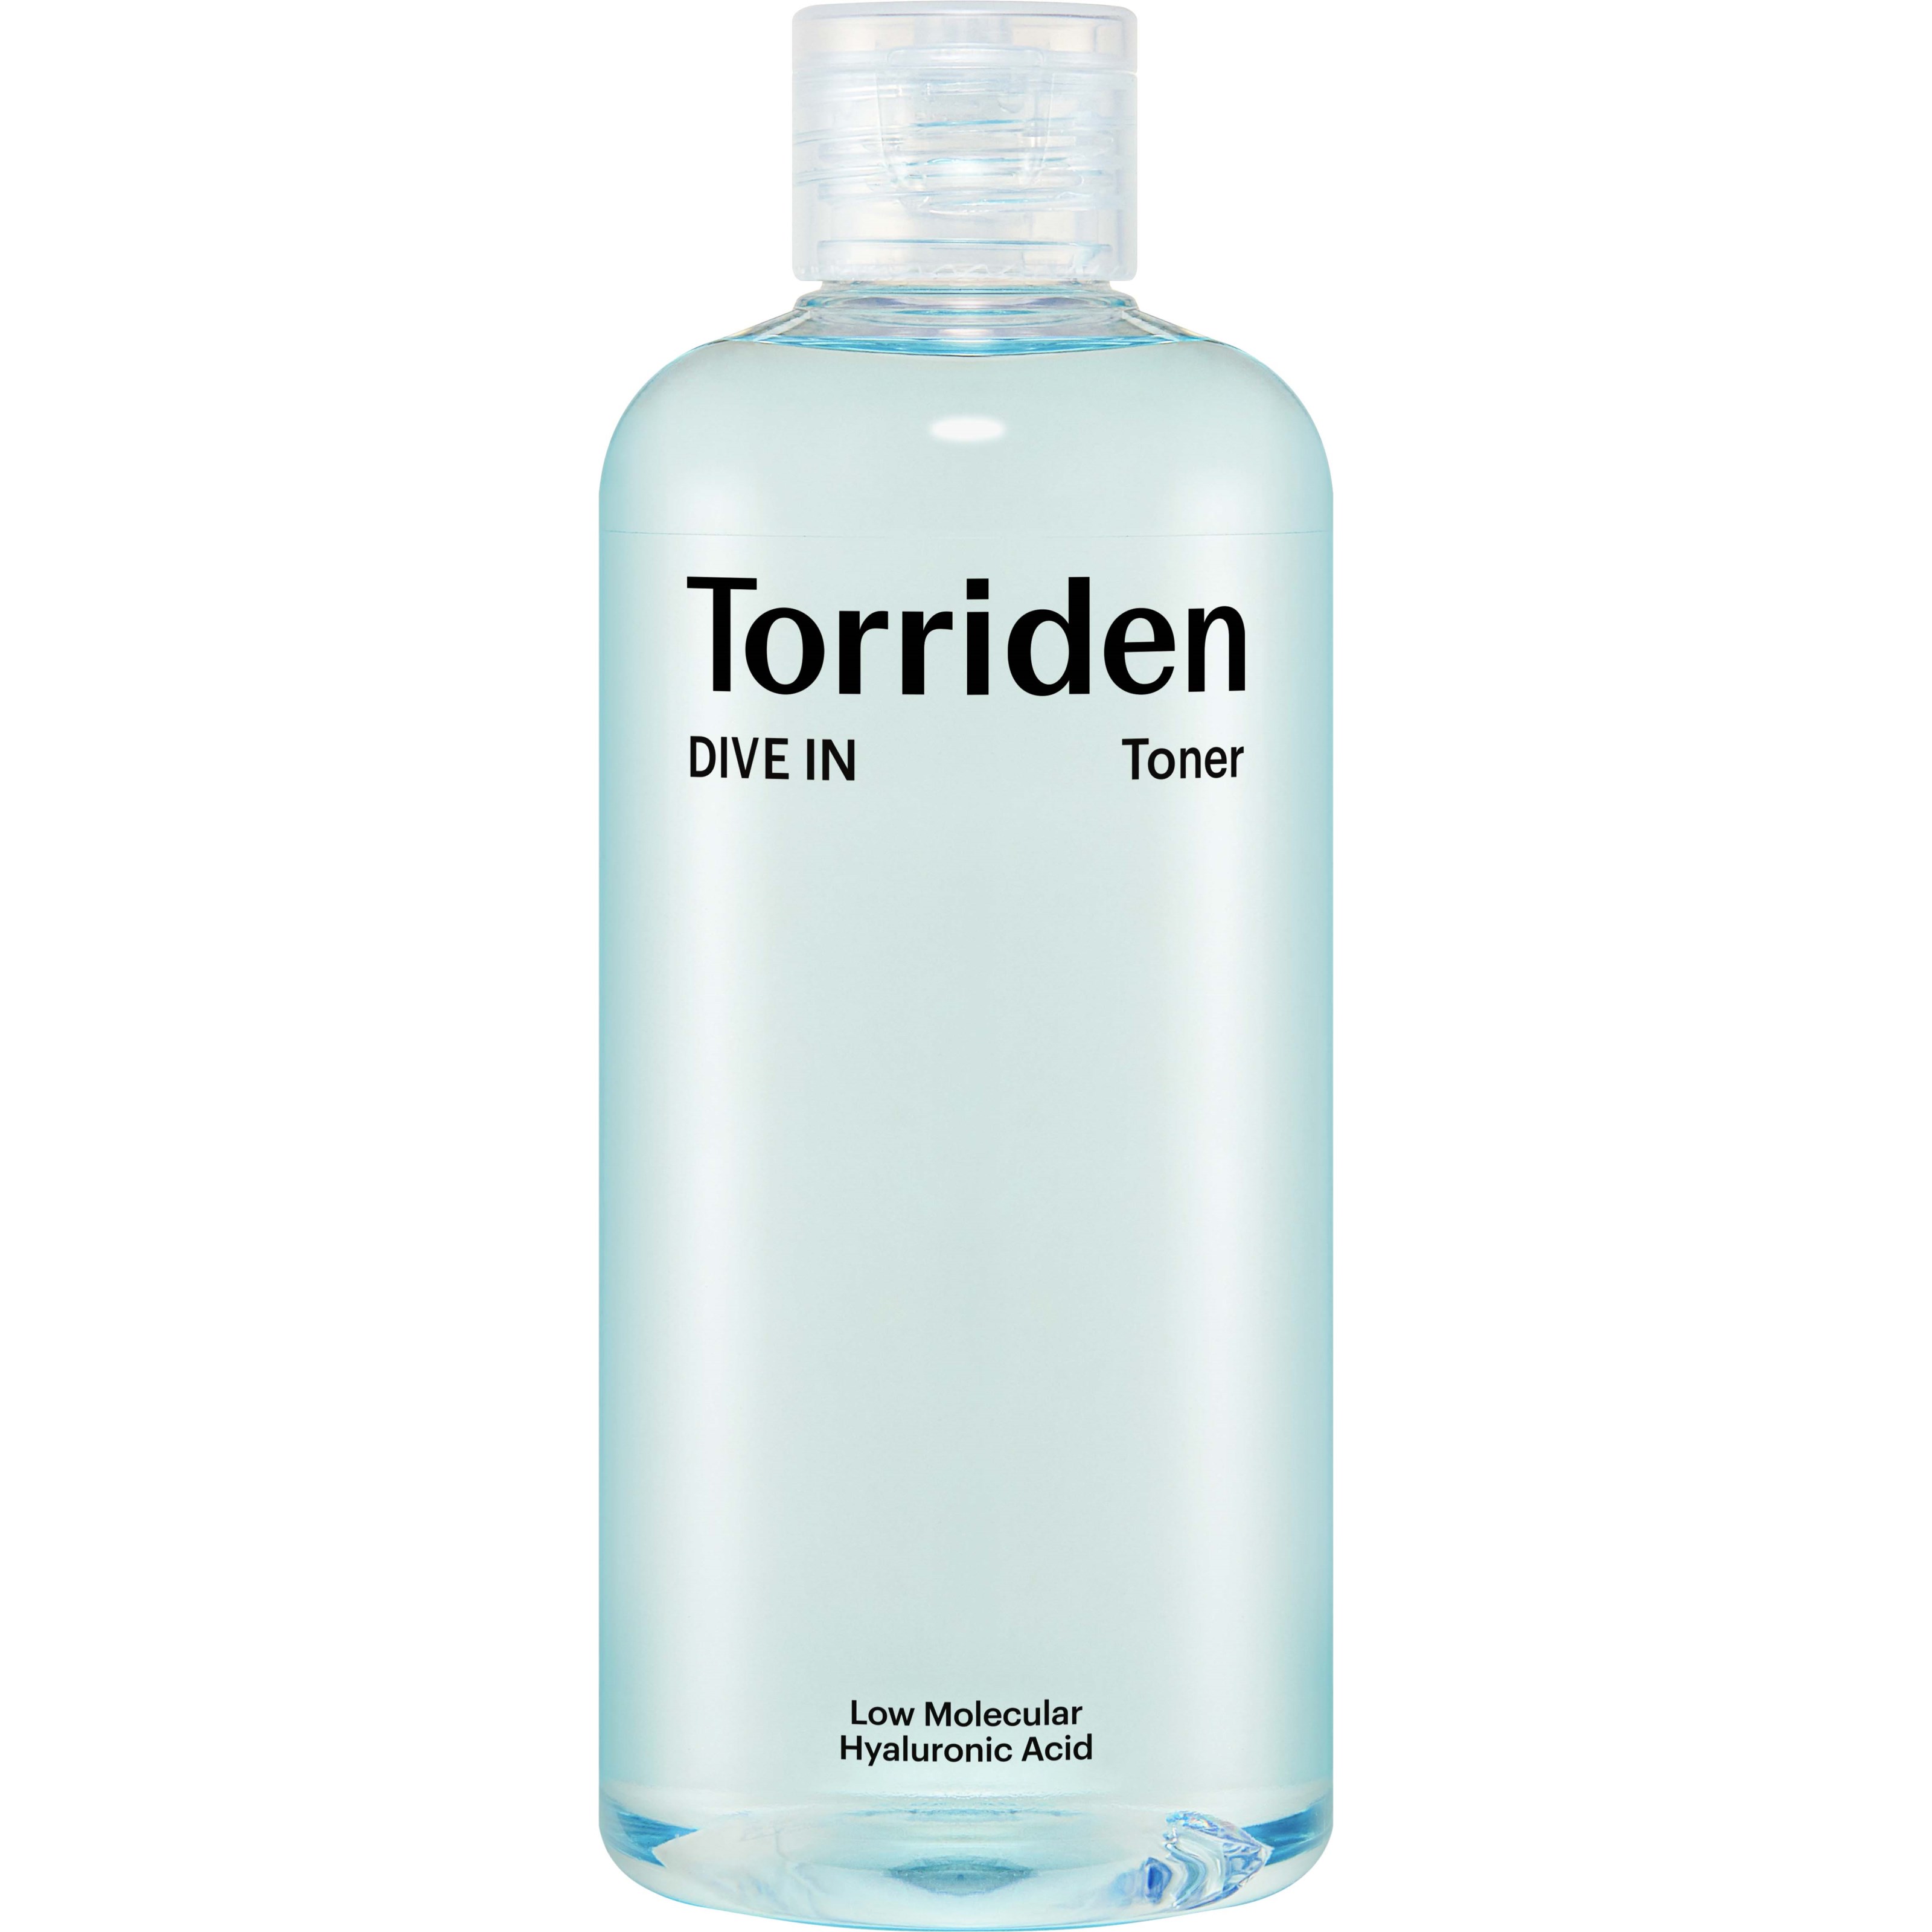 Torriden DIVE IN Low Molecular Hyaluronic Acid Toner 300 ml